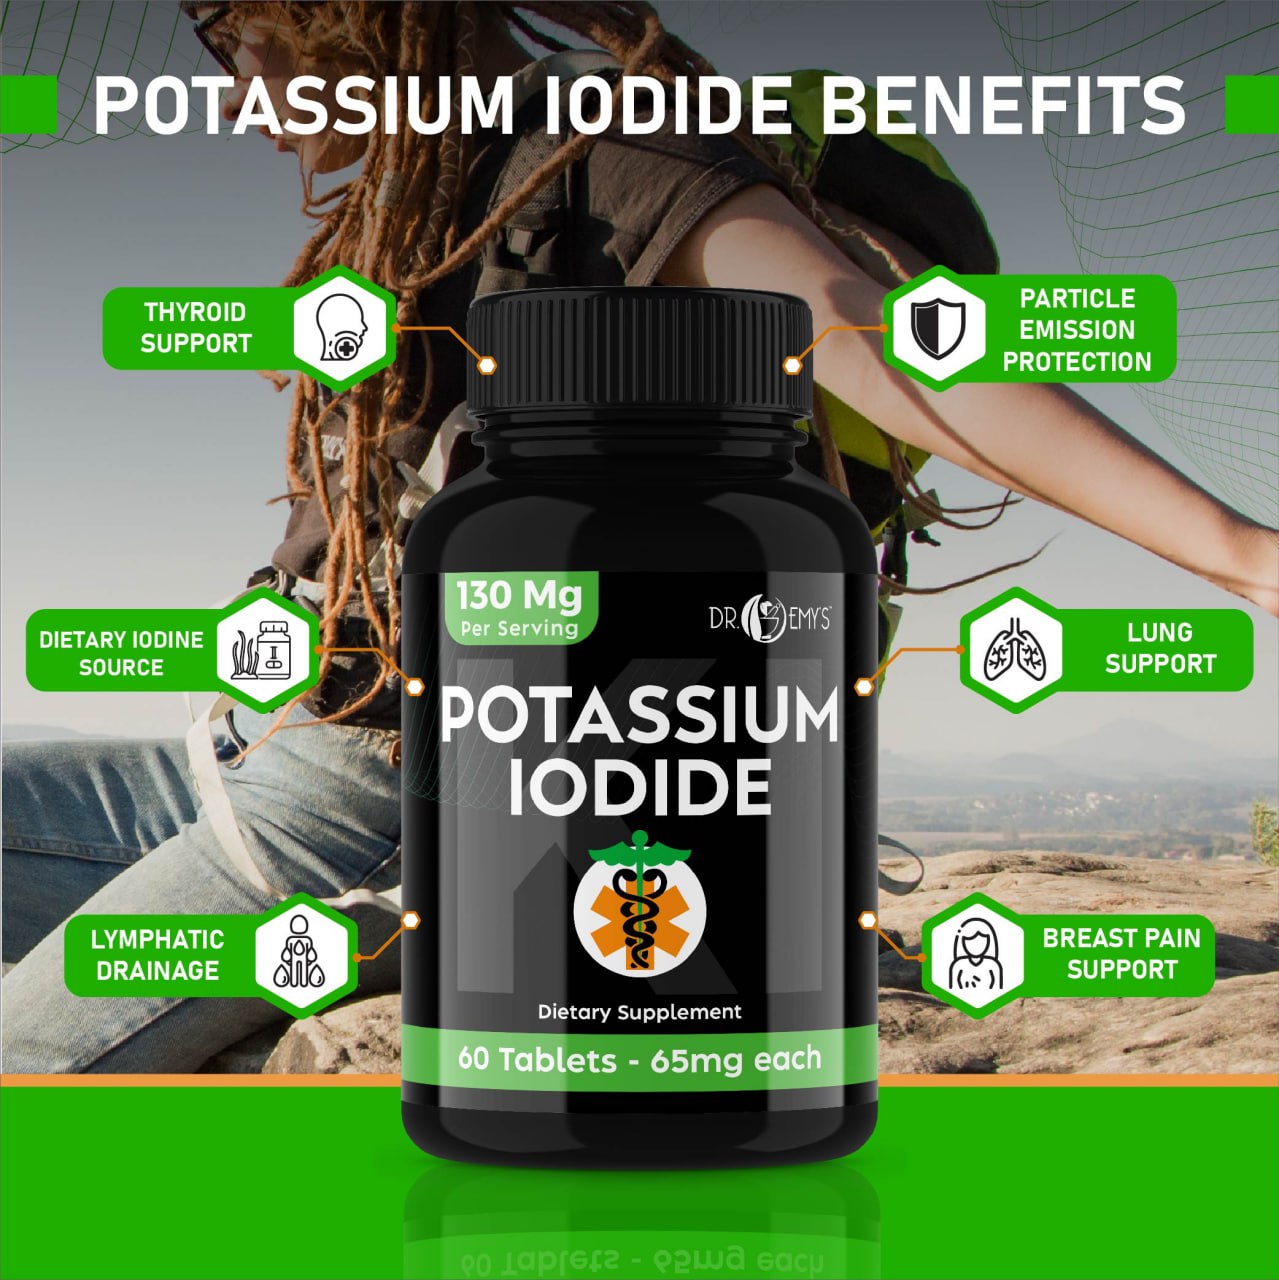 Potassium Iodide Tablets 130mg per serving